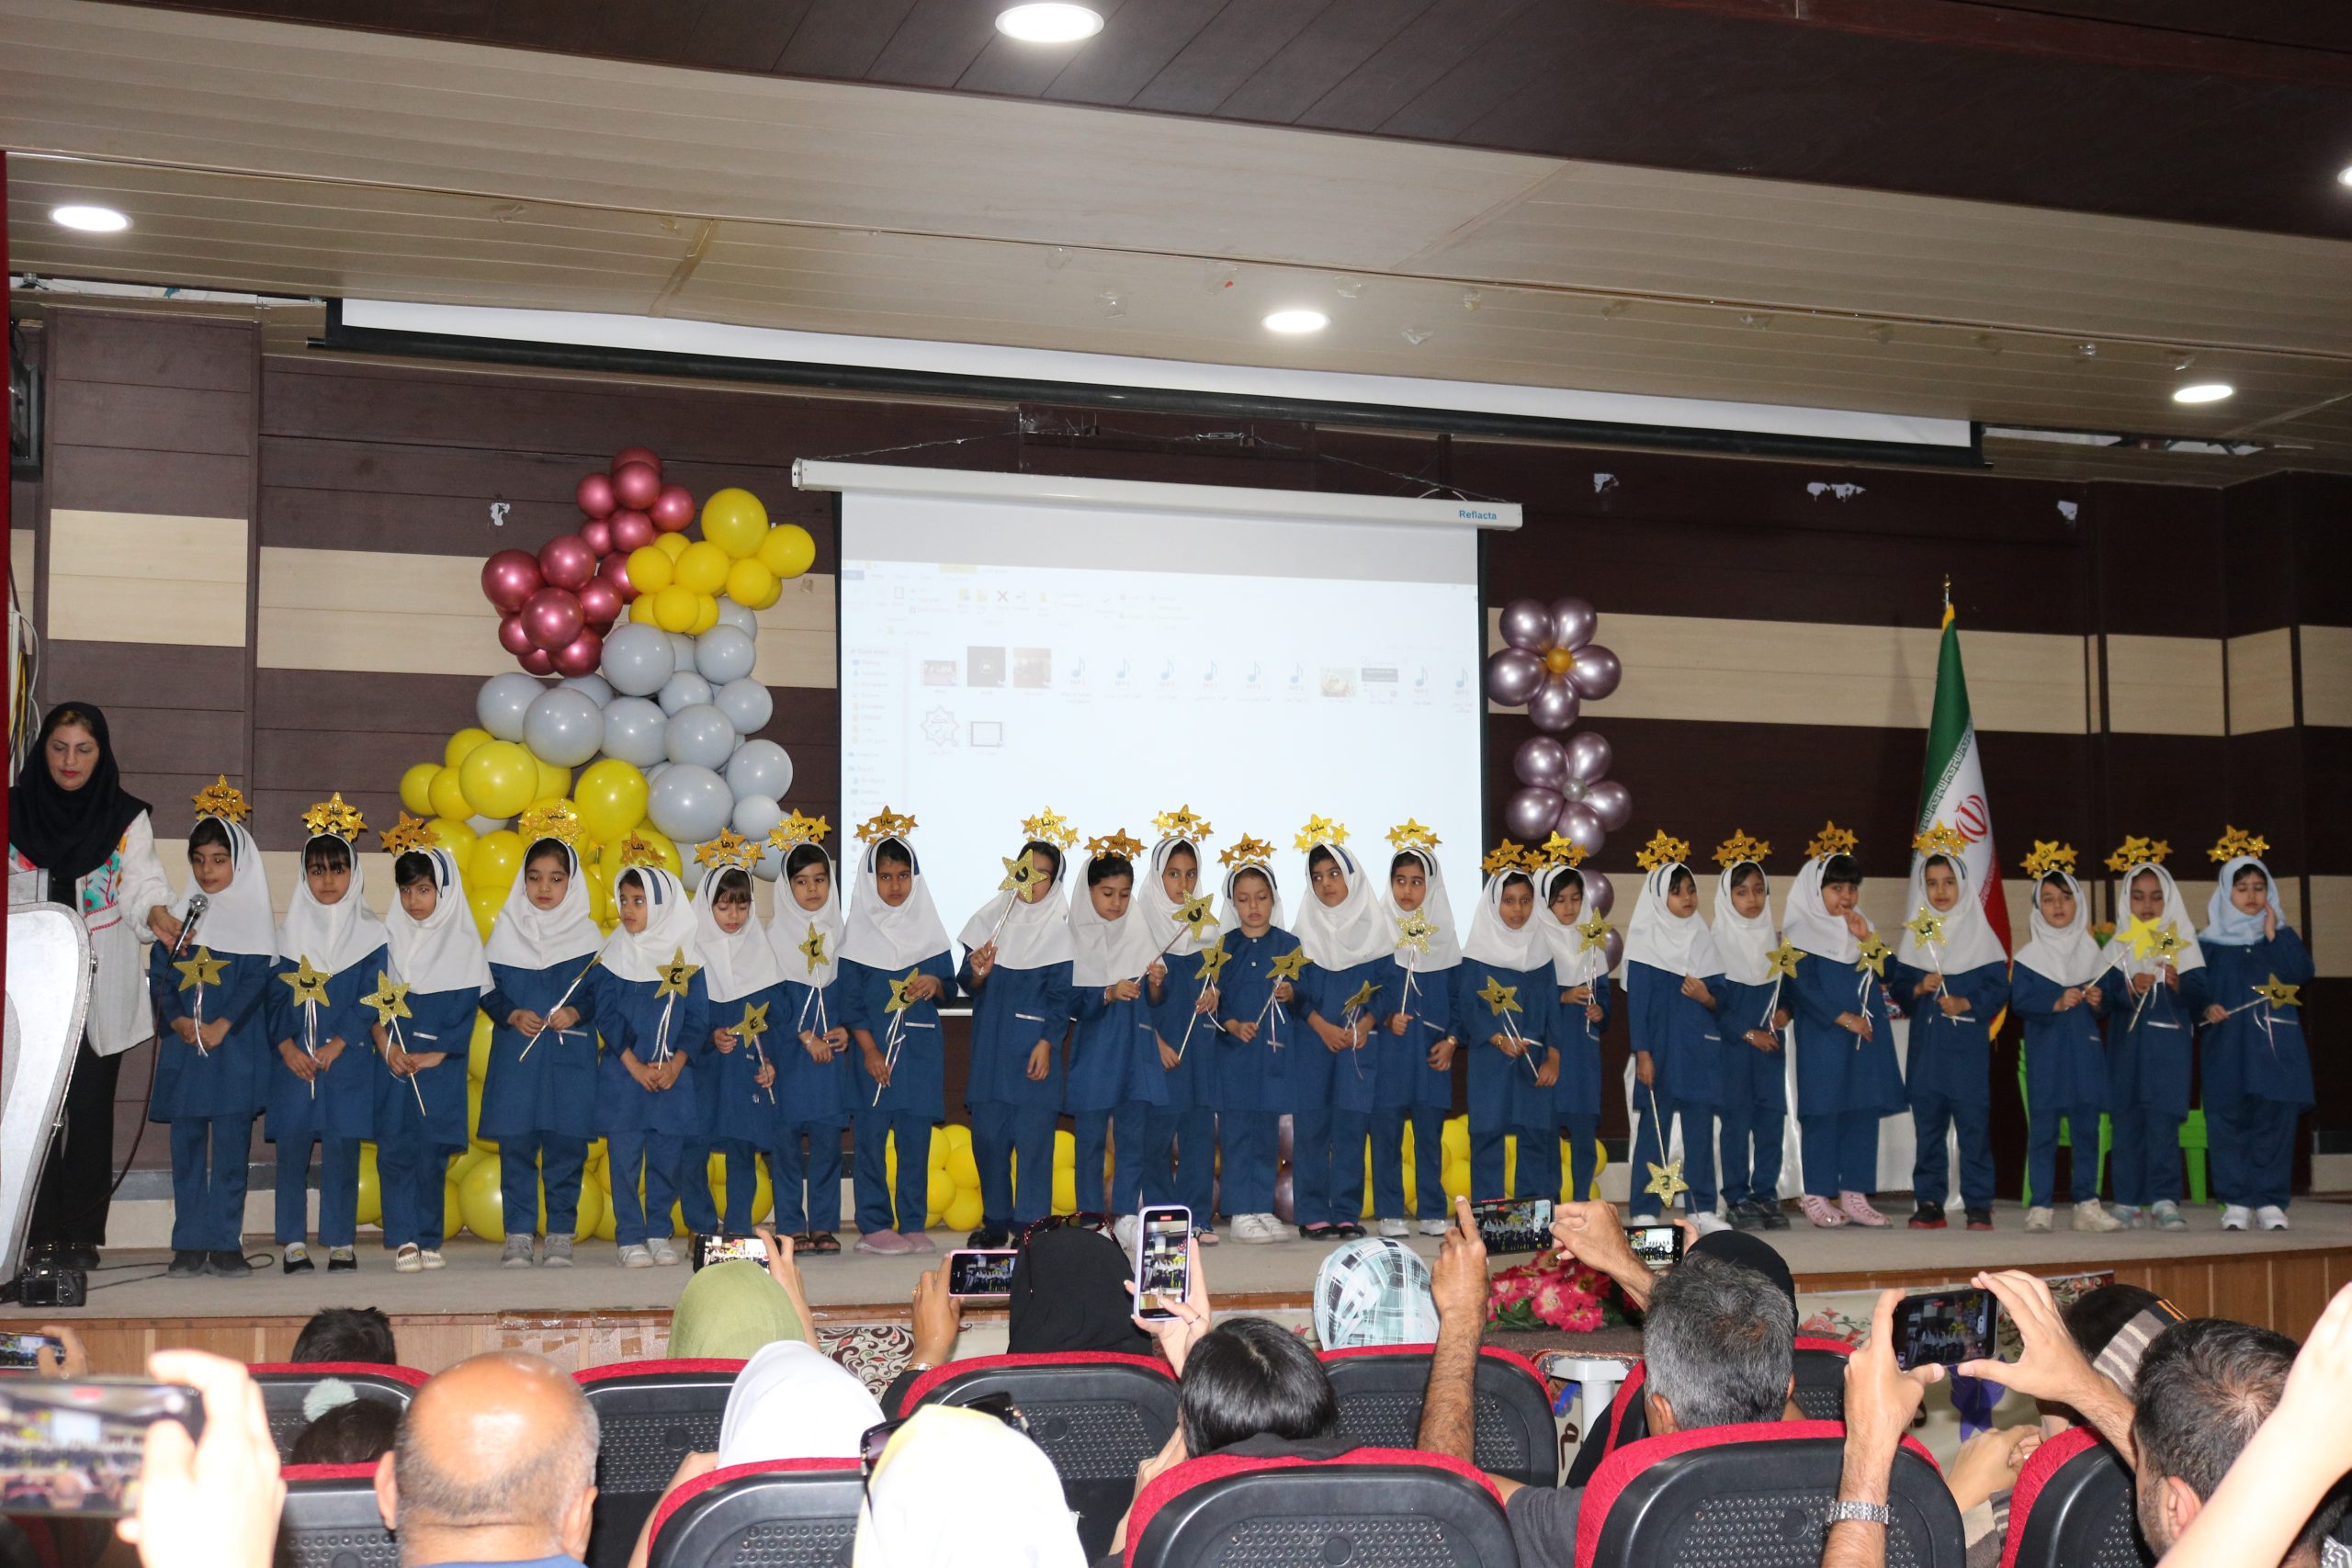 آموزشگاه مهر و ماه کرانی اوز جشن الفبا را در تالار دانشگاه آزاد اوز برگزار کرد